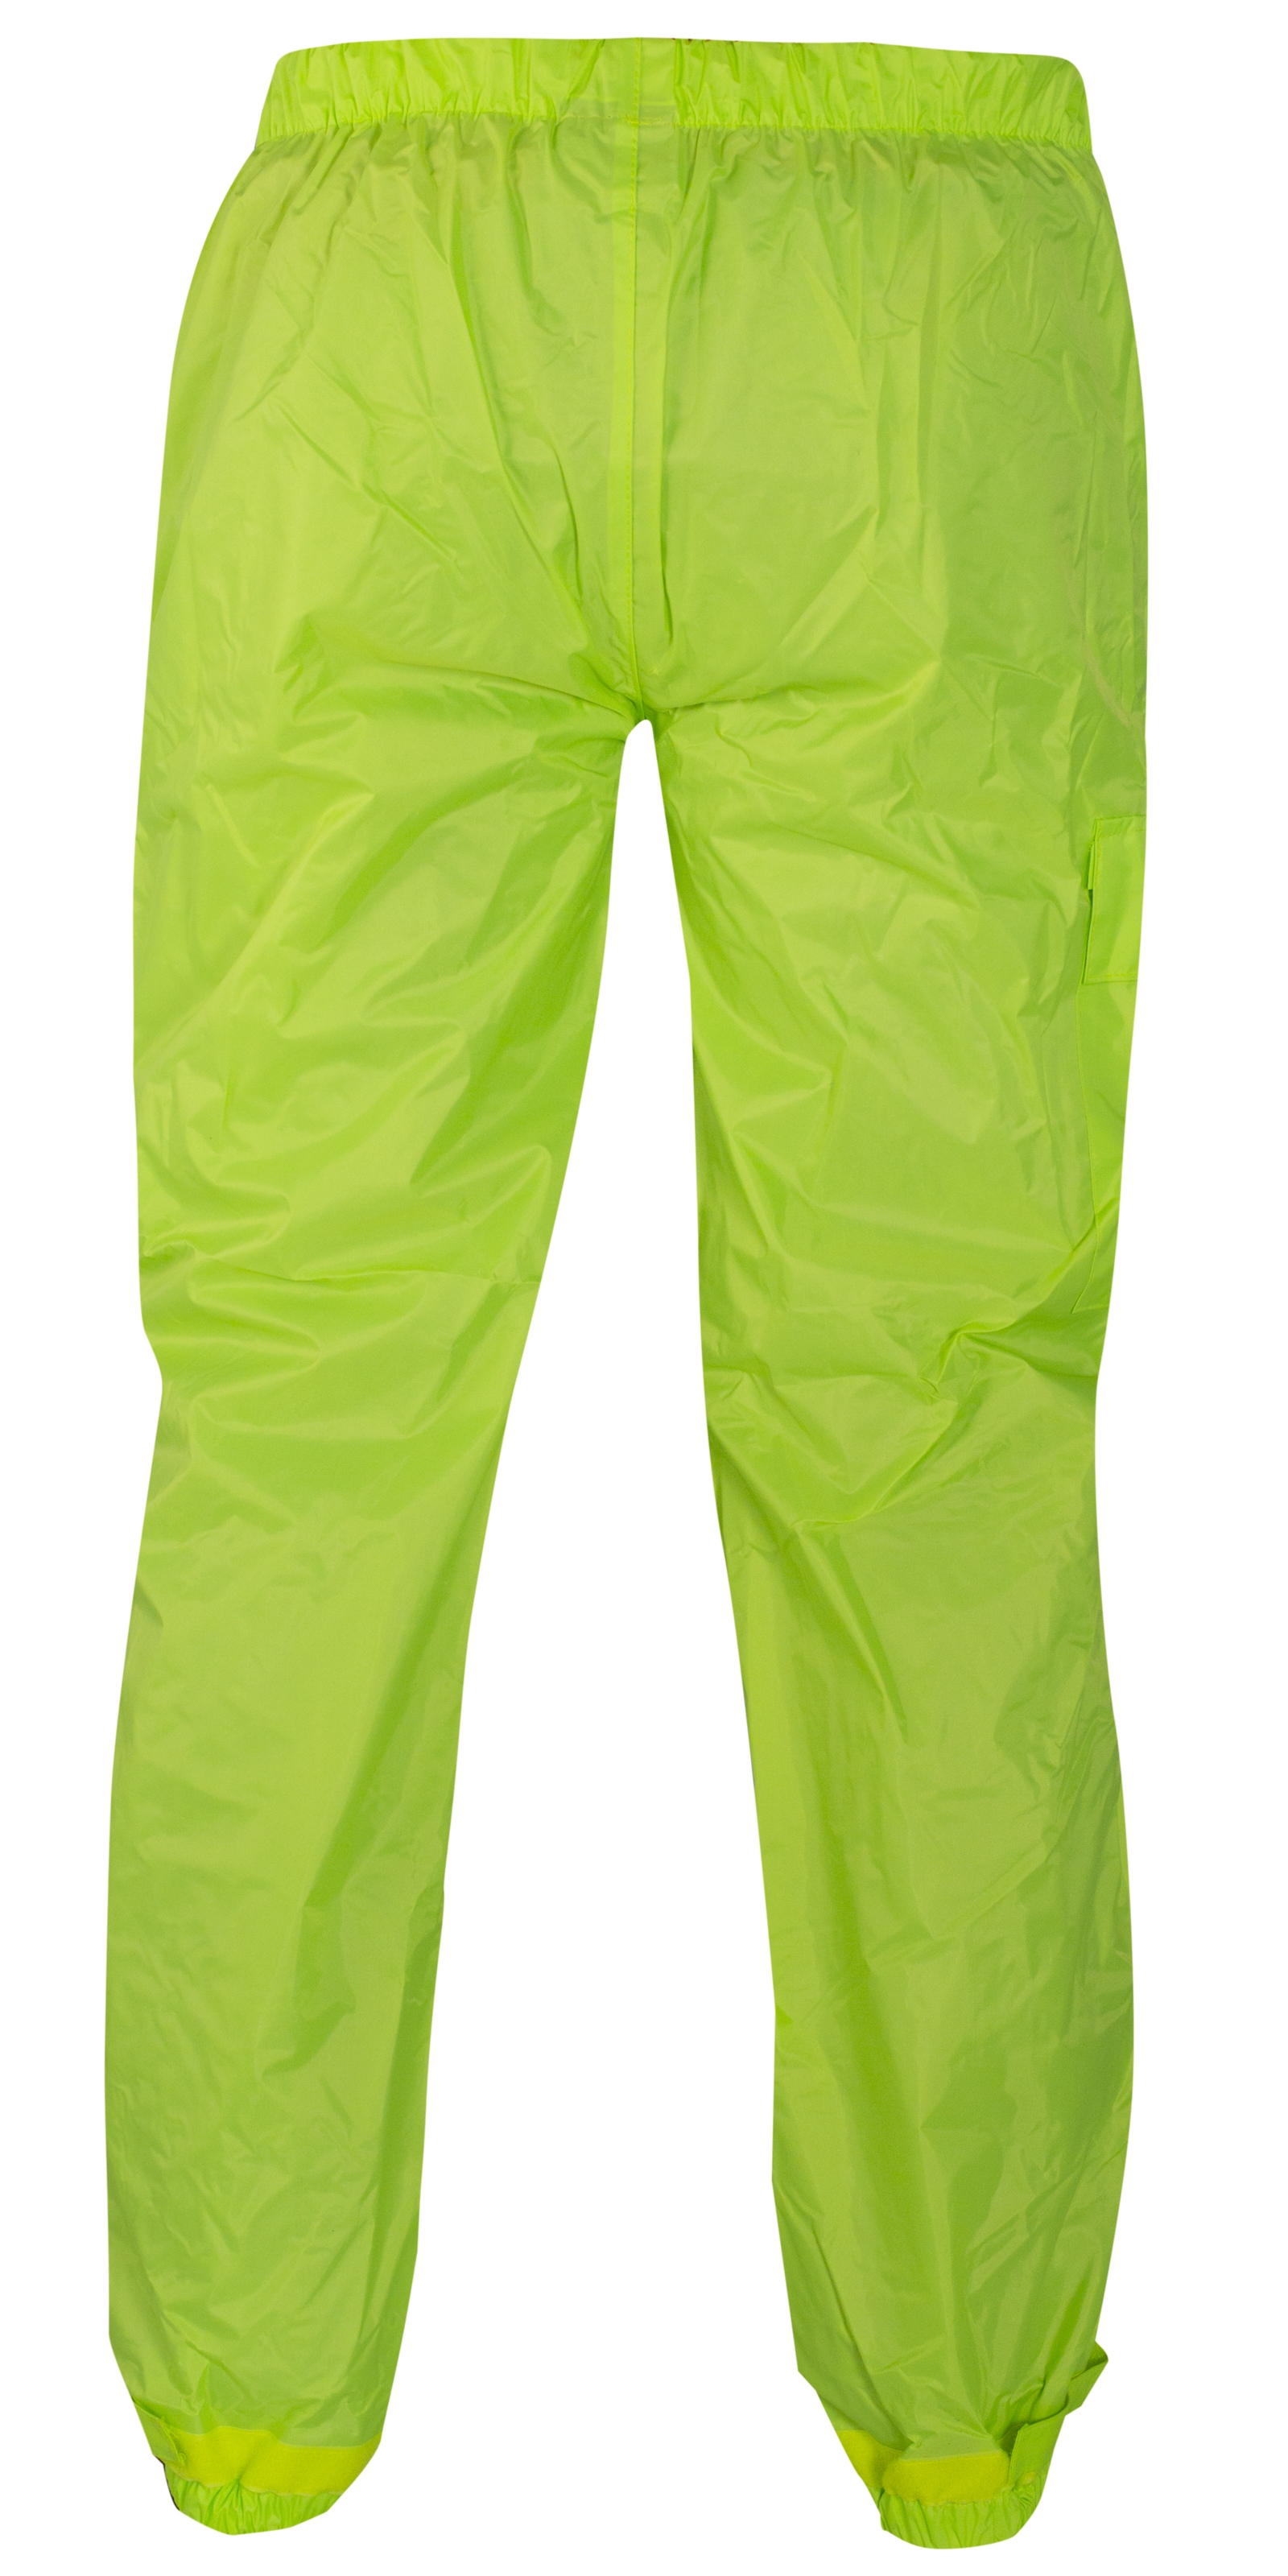 Abbigliamento Moto e Accessori - Tuta Impermeabile Giacca Pantaloni  Combinazione Antipioggia alta Visibilità